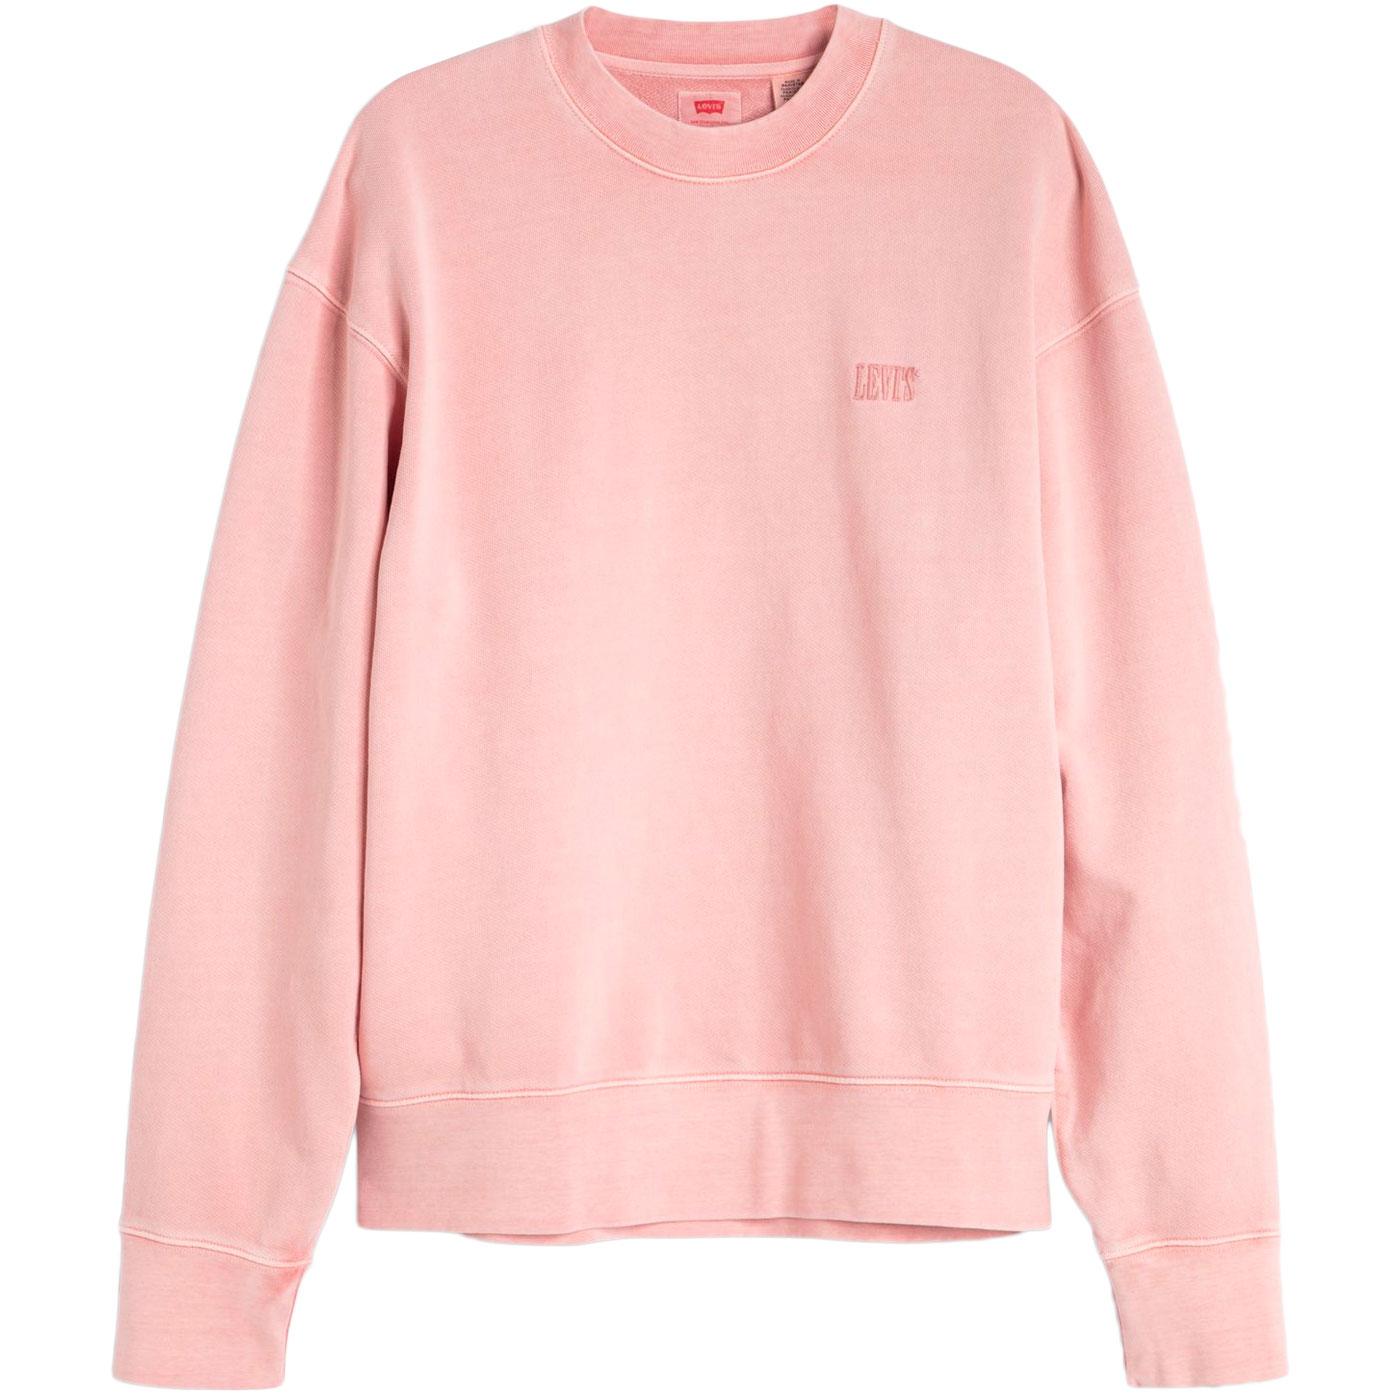 levi's hoodie pink